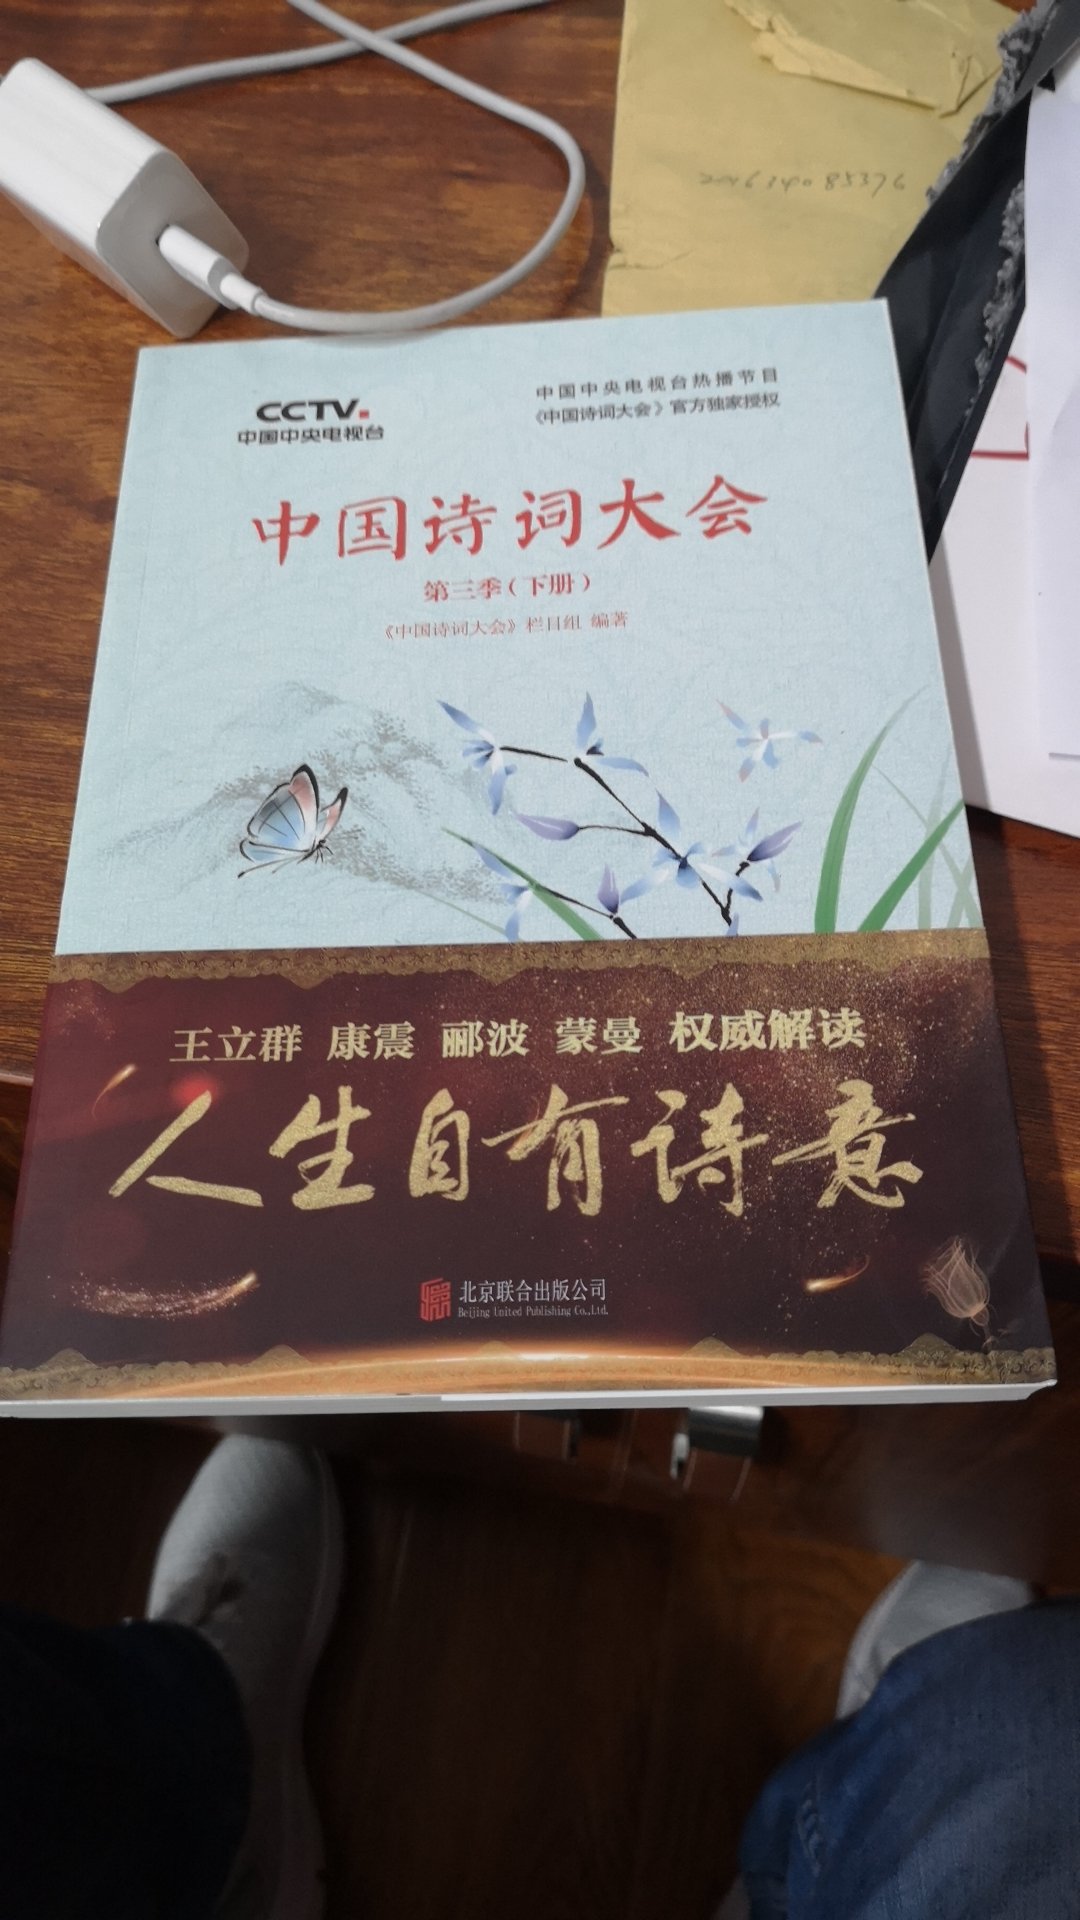 很好的书，值得每个人去读，希望大家都能多学习我们的汉语文化。